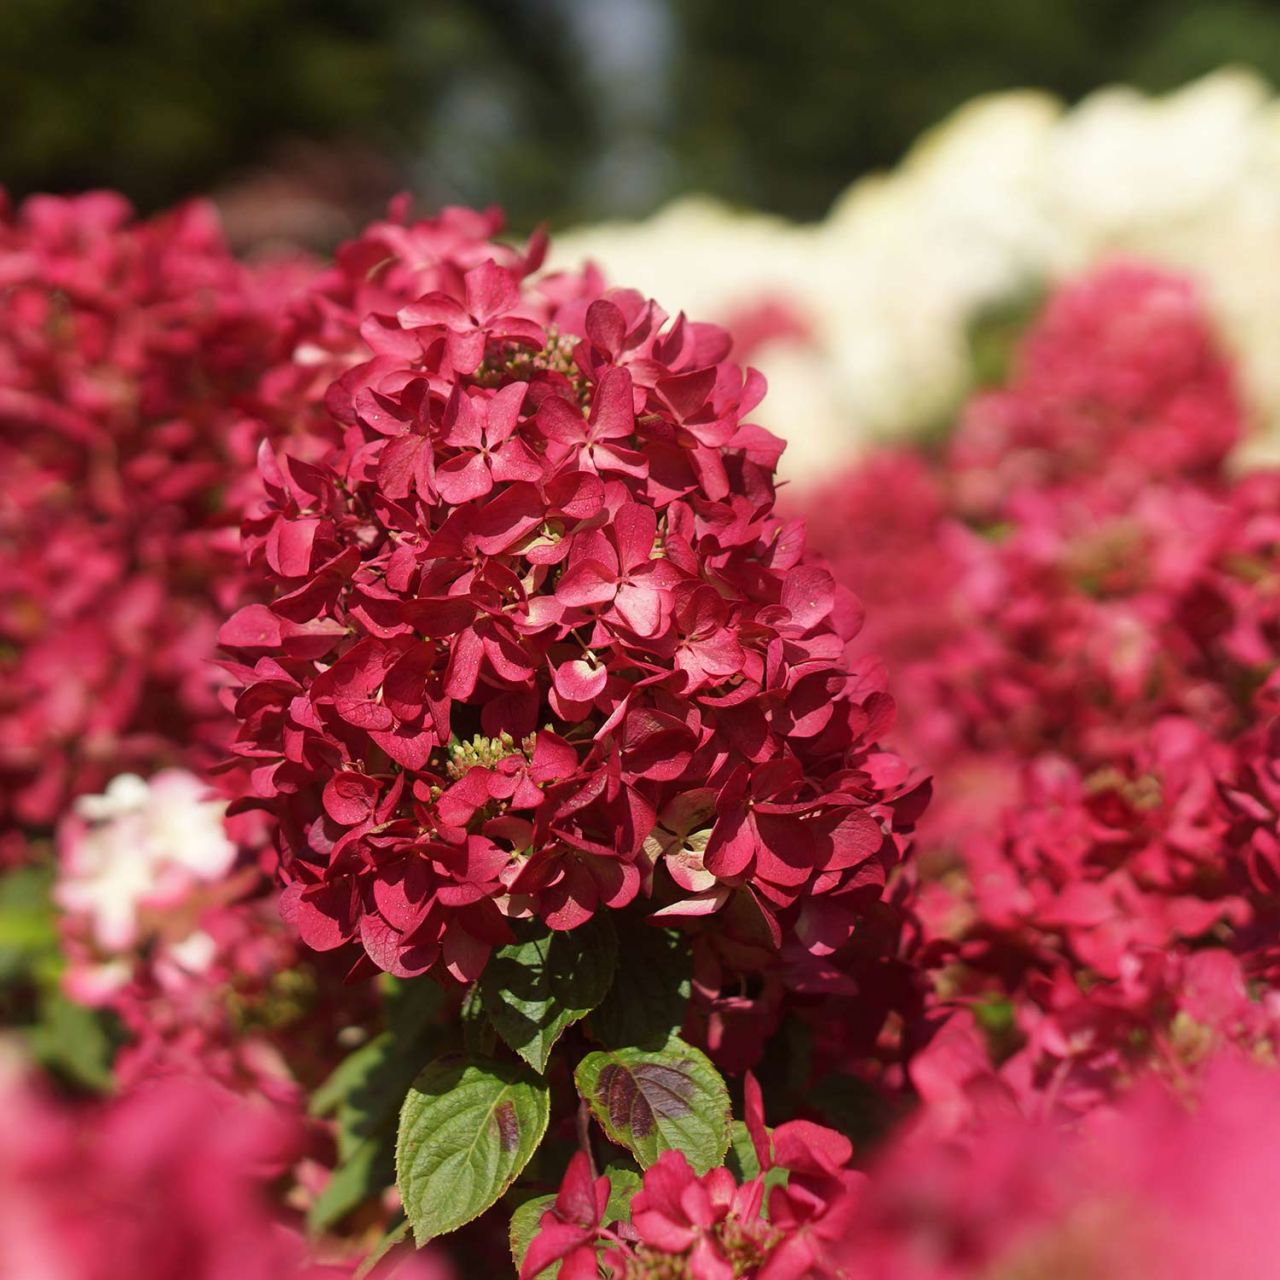 Kategorie <b>Blütensträucher und Ziergehölze </b> - Rispenhortensie 'Diamant Rouge ®' - Hydrangea paniculata